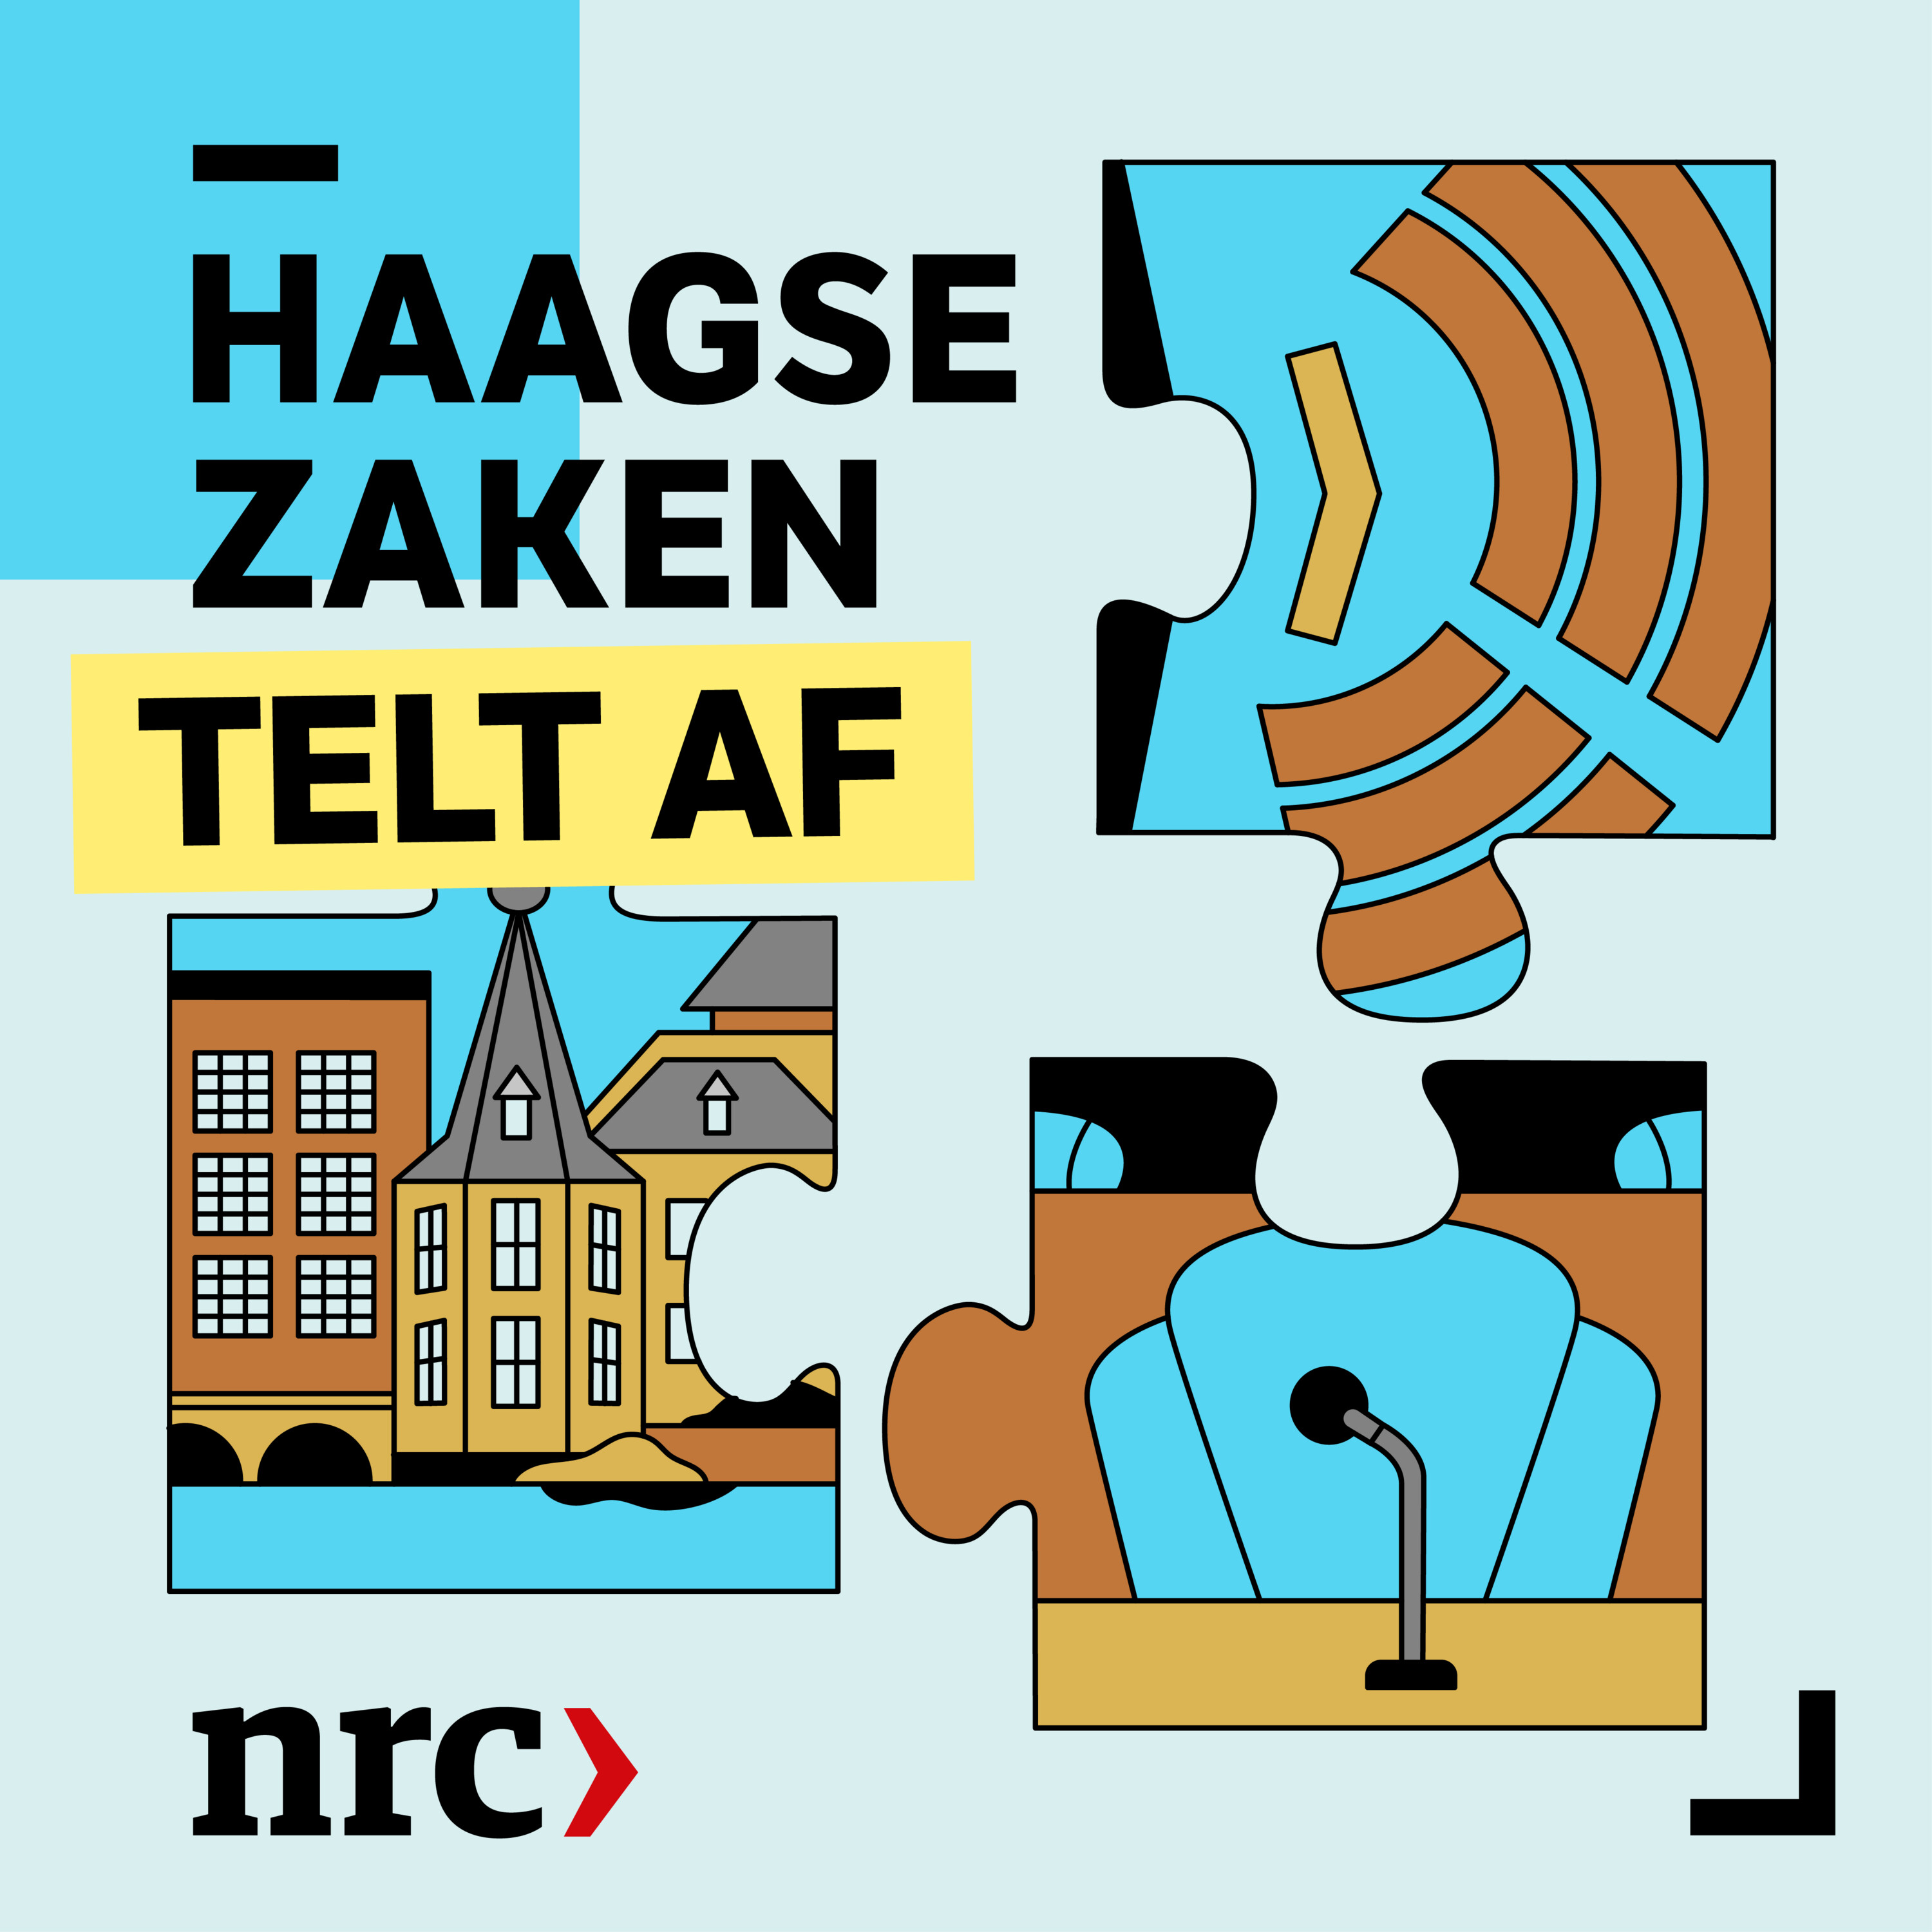 Haagse Zaken telt af: nog 9 dagen